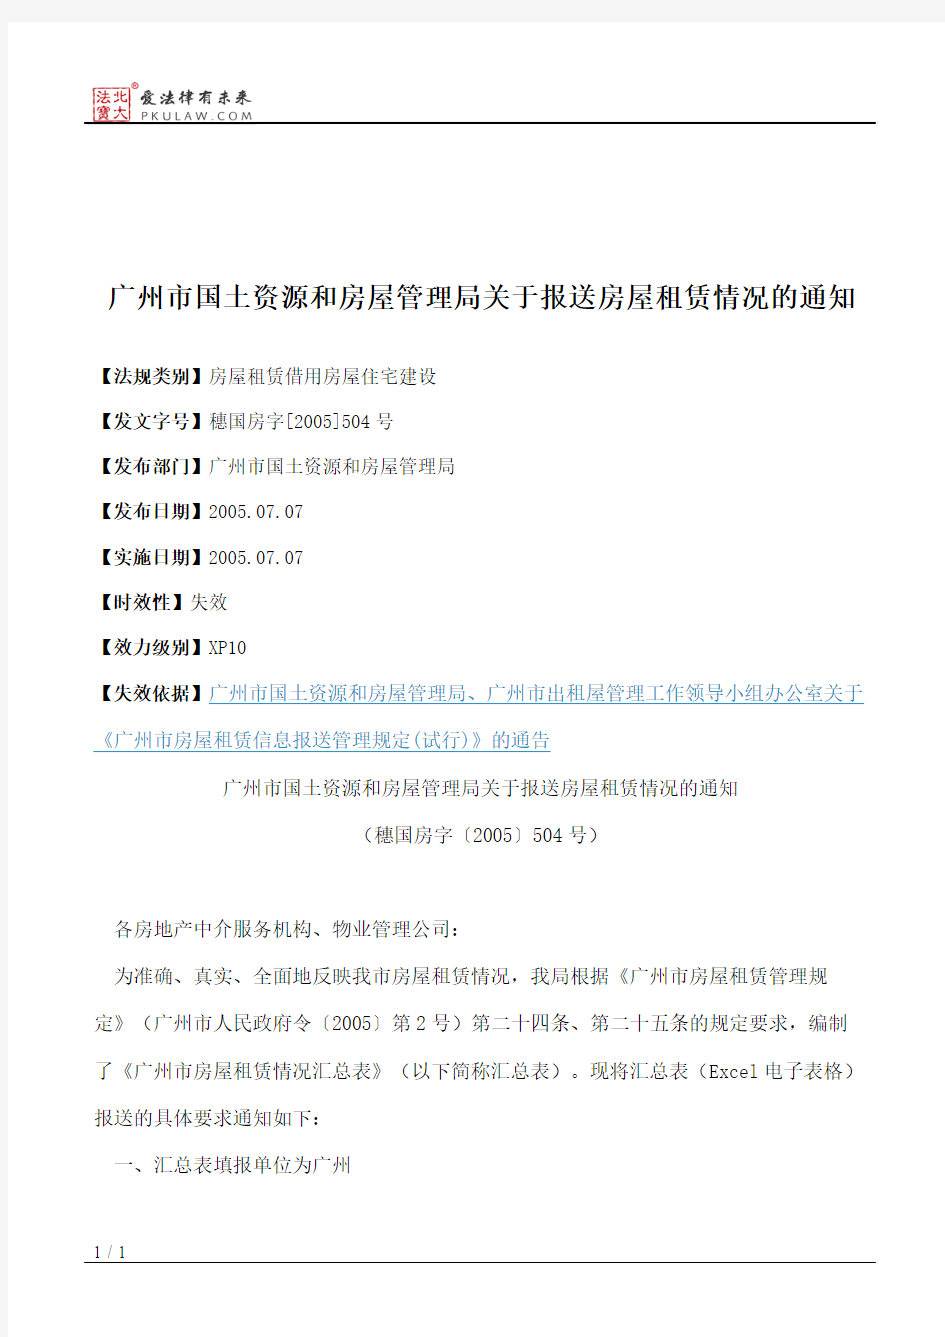 广州市国土资源和房屋管理局关于报送房屋租赁情况的通知